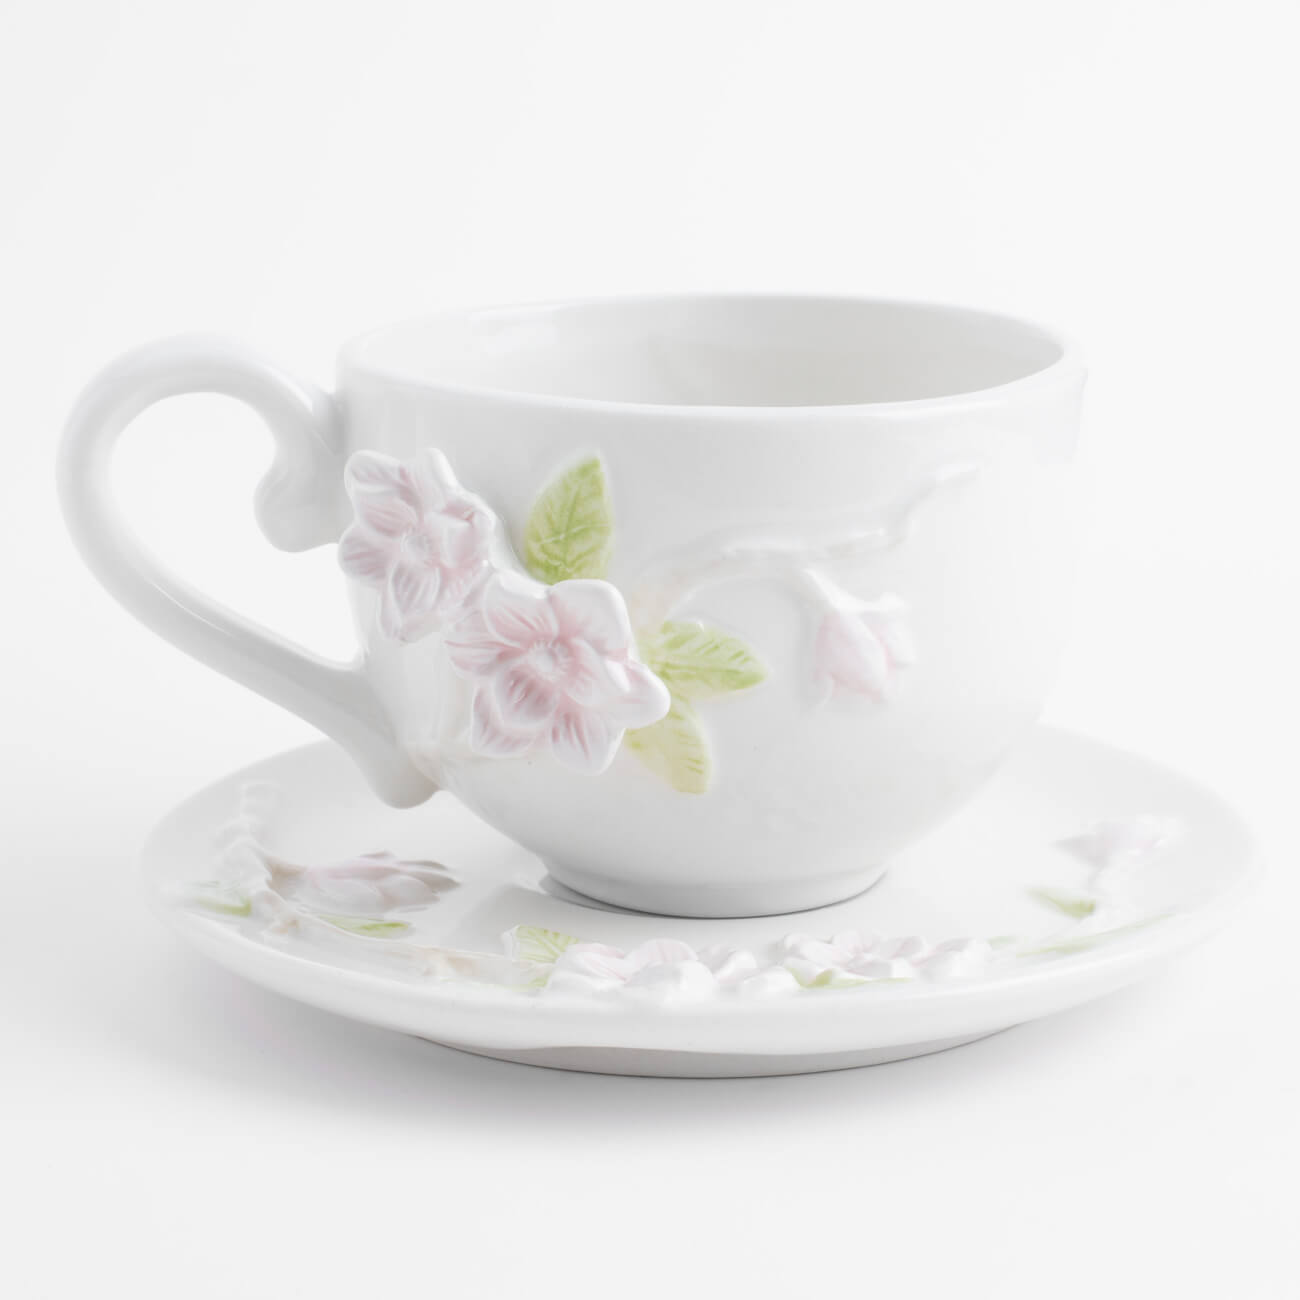 Пара чайная для завтрака, 1 перс, 2 пр, 420 мл, керамика, молочная, Цветы магнолии, Magnolia изображение № 1